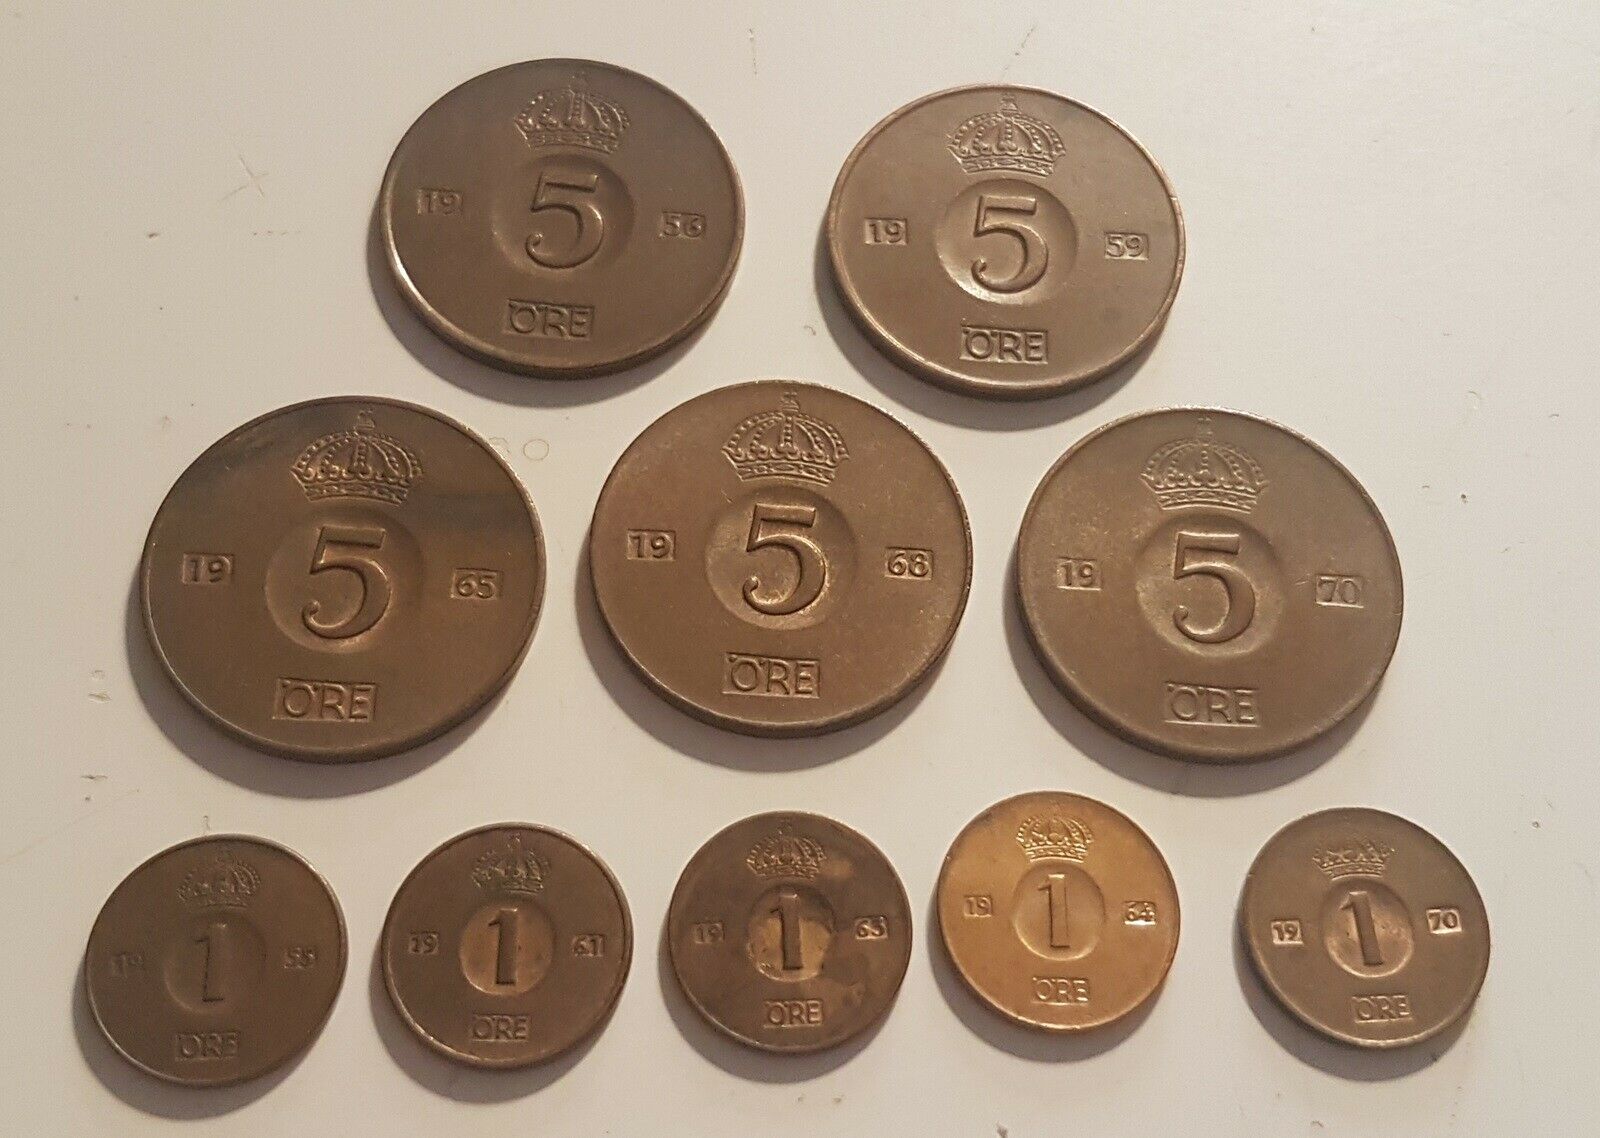 Skandinavien, mønter, 5 øre og 1 øre - dba.dk - og Salg af Nyt og Brugt